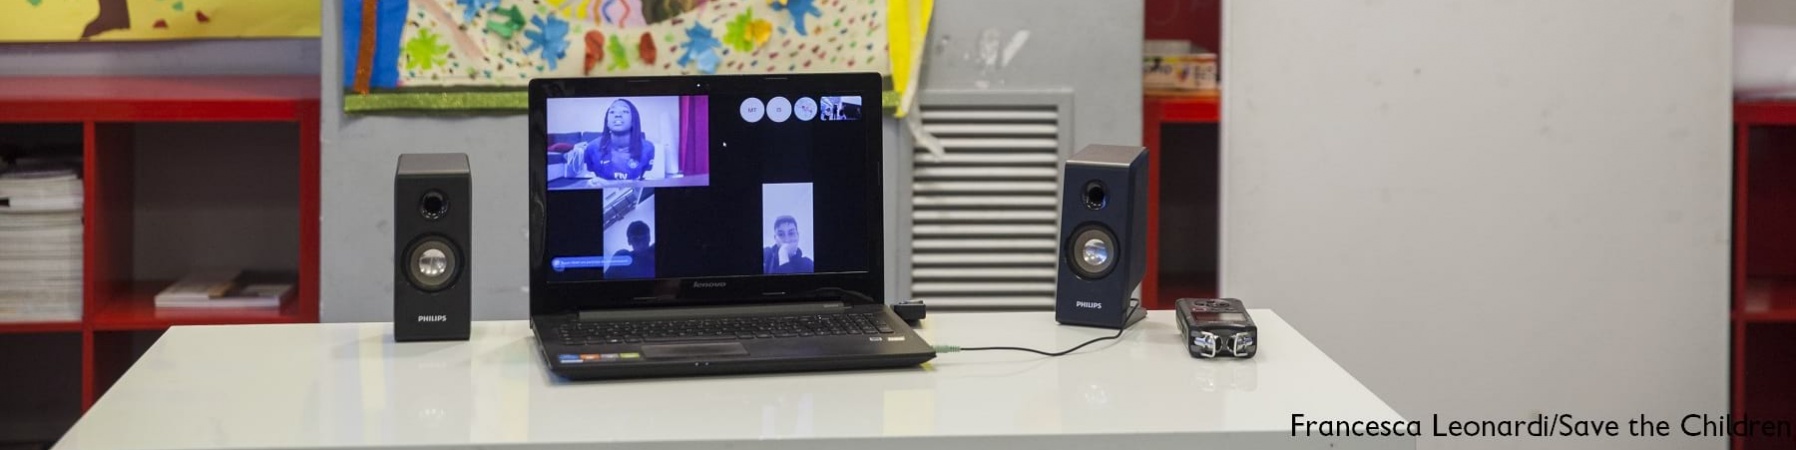 computer appoggiato su un tavolo, sullo schermo è visibile una video chiamata in corso